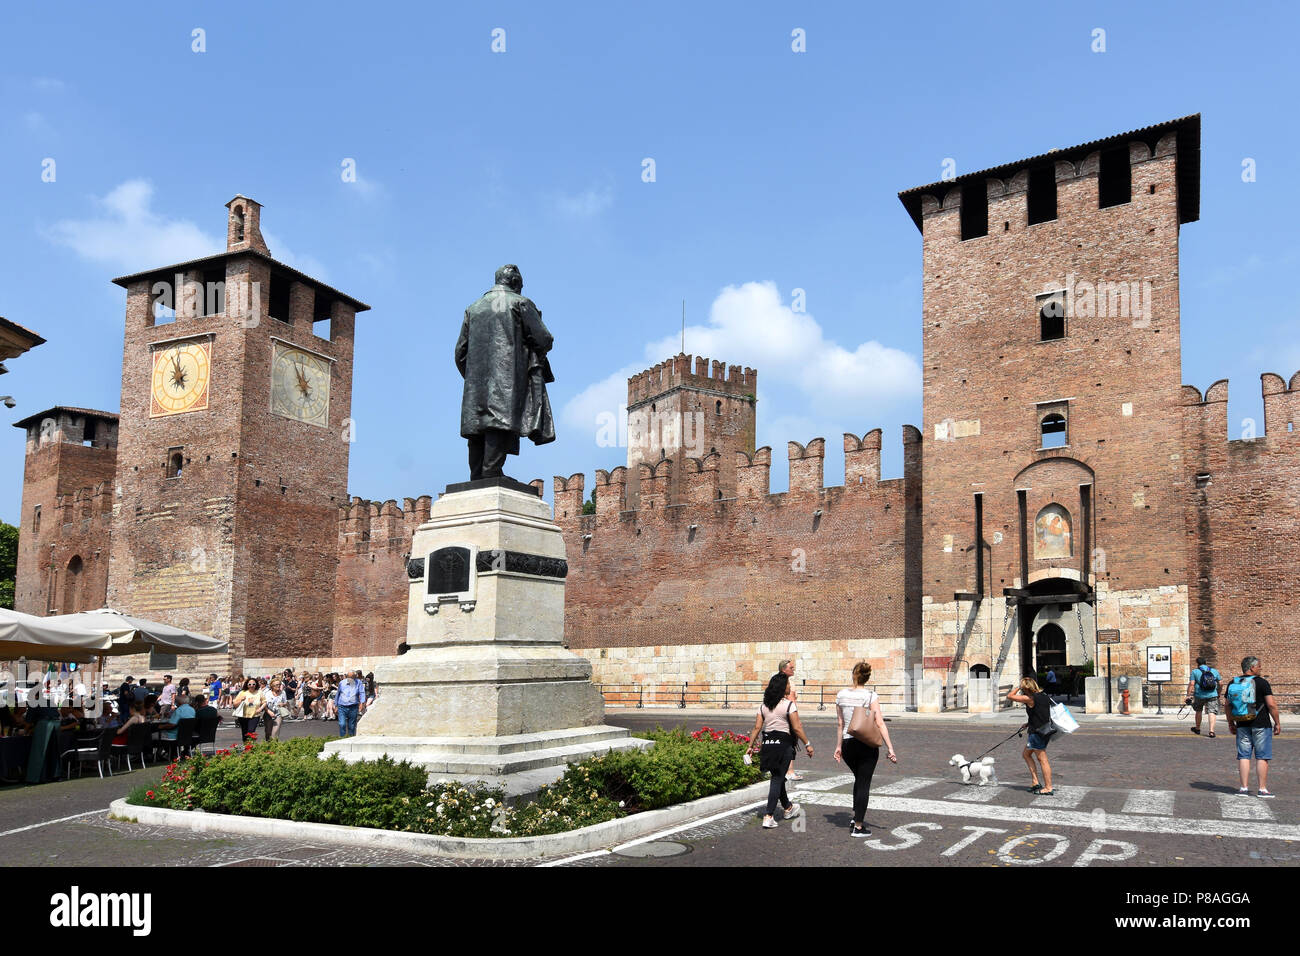 Castelvecchio (in Italienisch - Alte Burg) ist ein Schloss und Museum in Verona, Norditalien. Es ist das wichtigste militärische Bau der Scaliger Dynastie, die die Stadt im Mittelalter herrschte. Stadt Verona in Venetien, Italien, Italienisch. Stockfoto